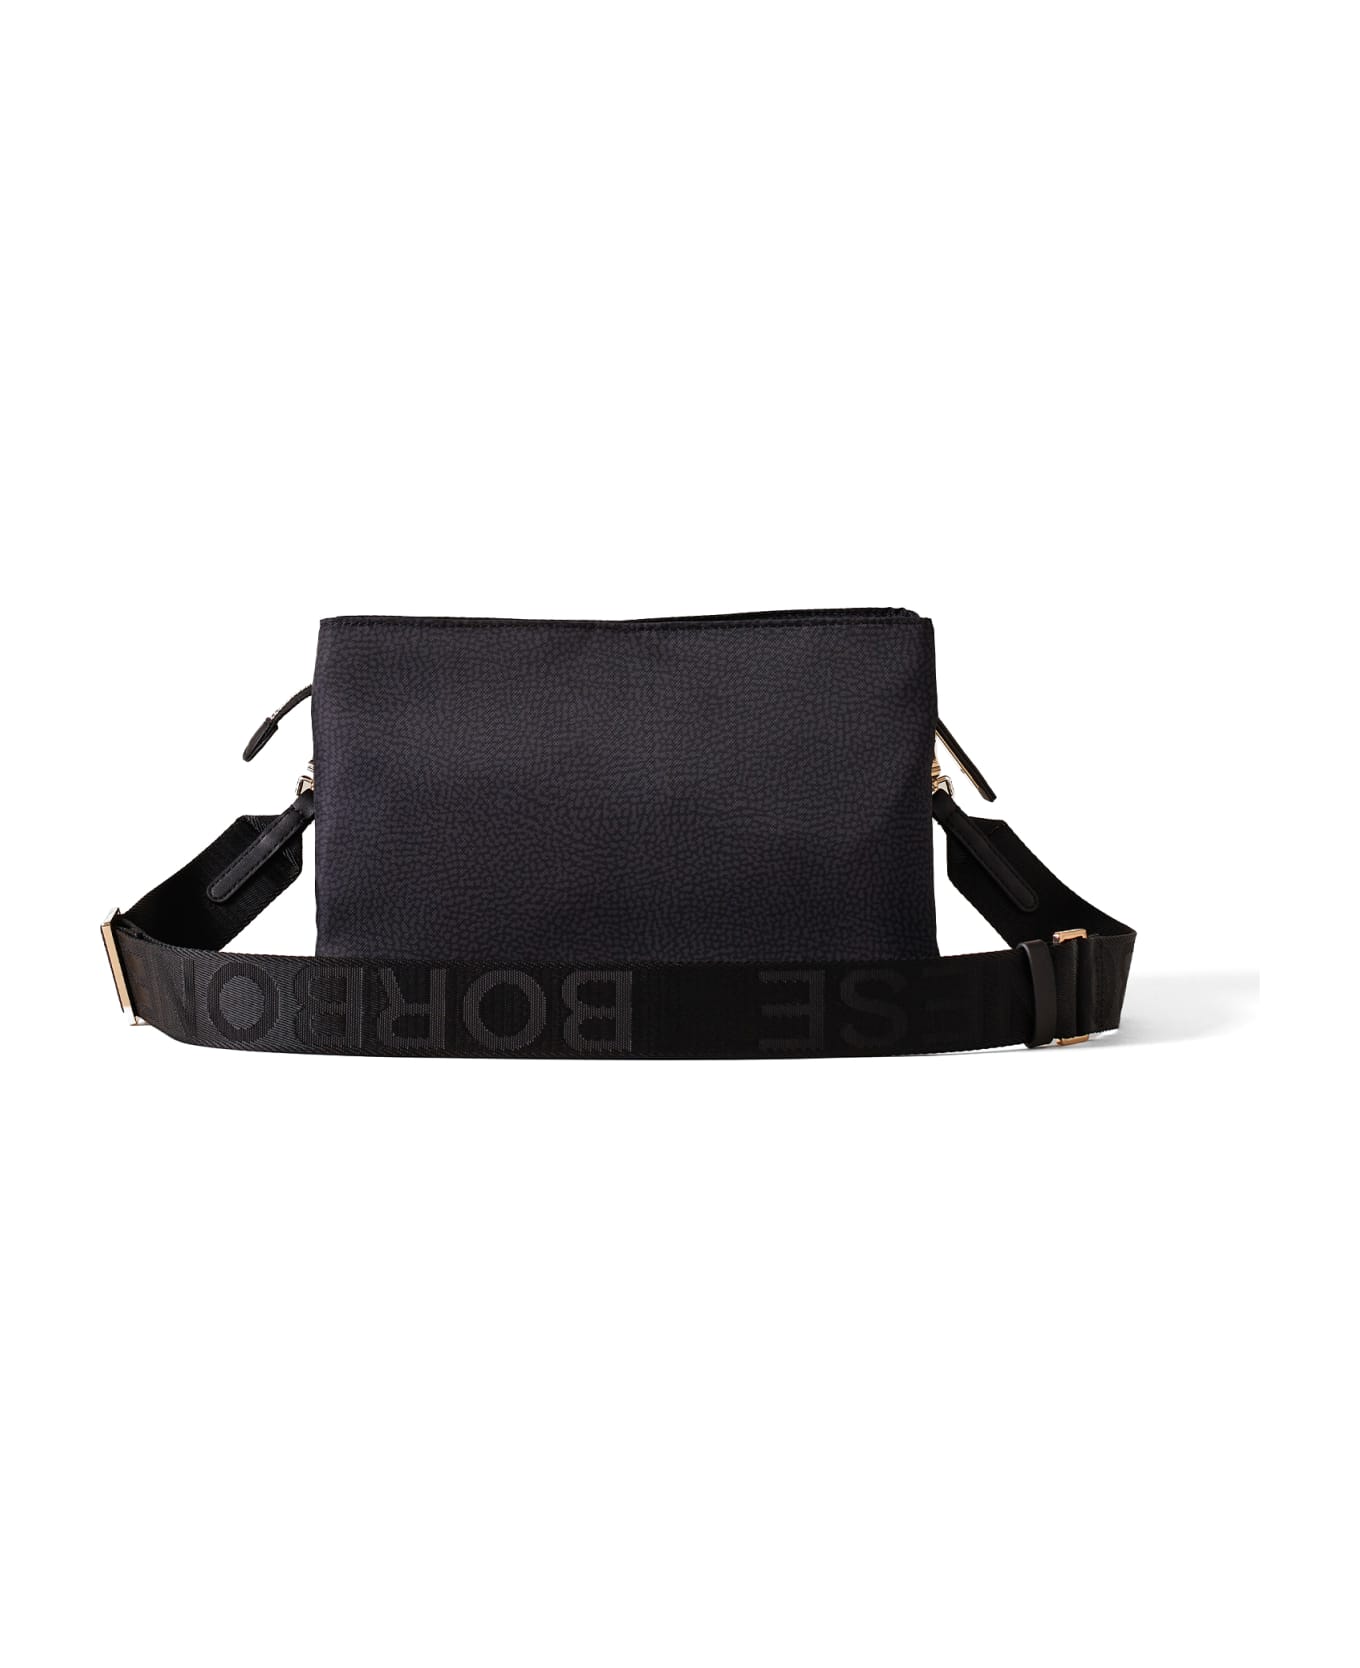 Borbonese Small Black Shoulder Bag - DARK BLACK ショルダーバッグ